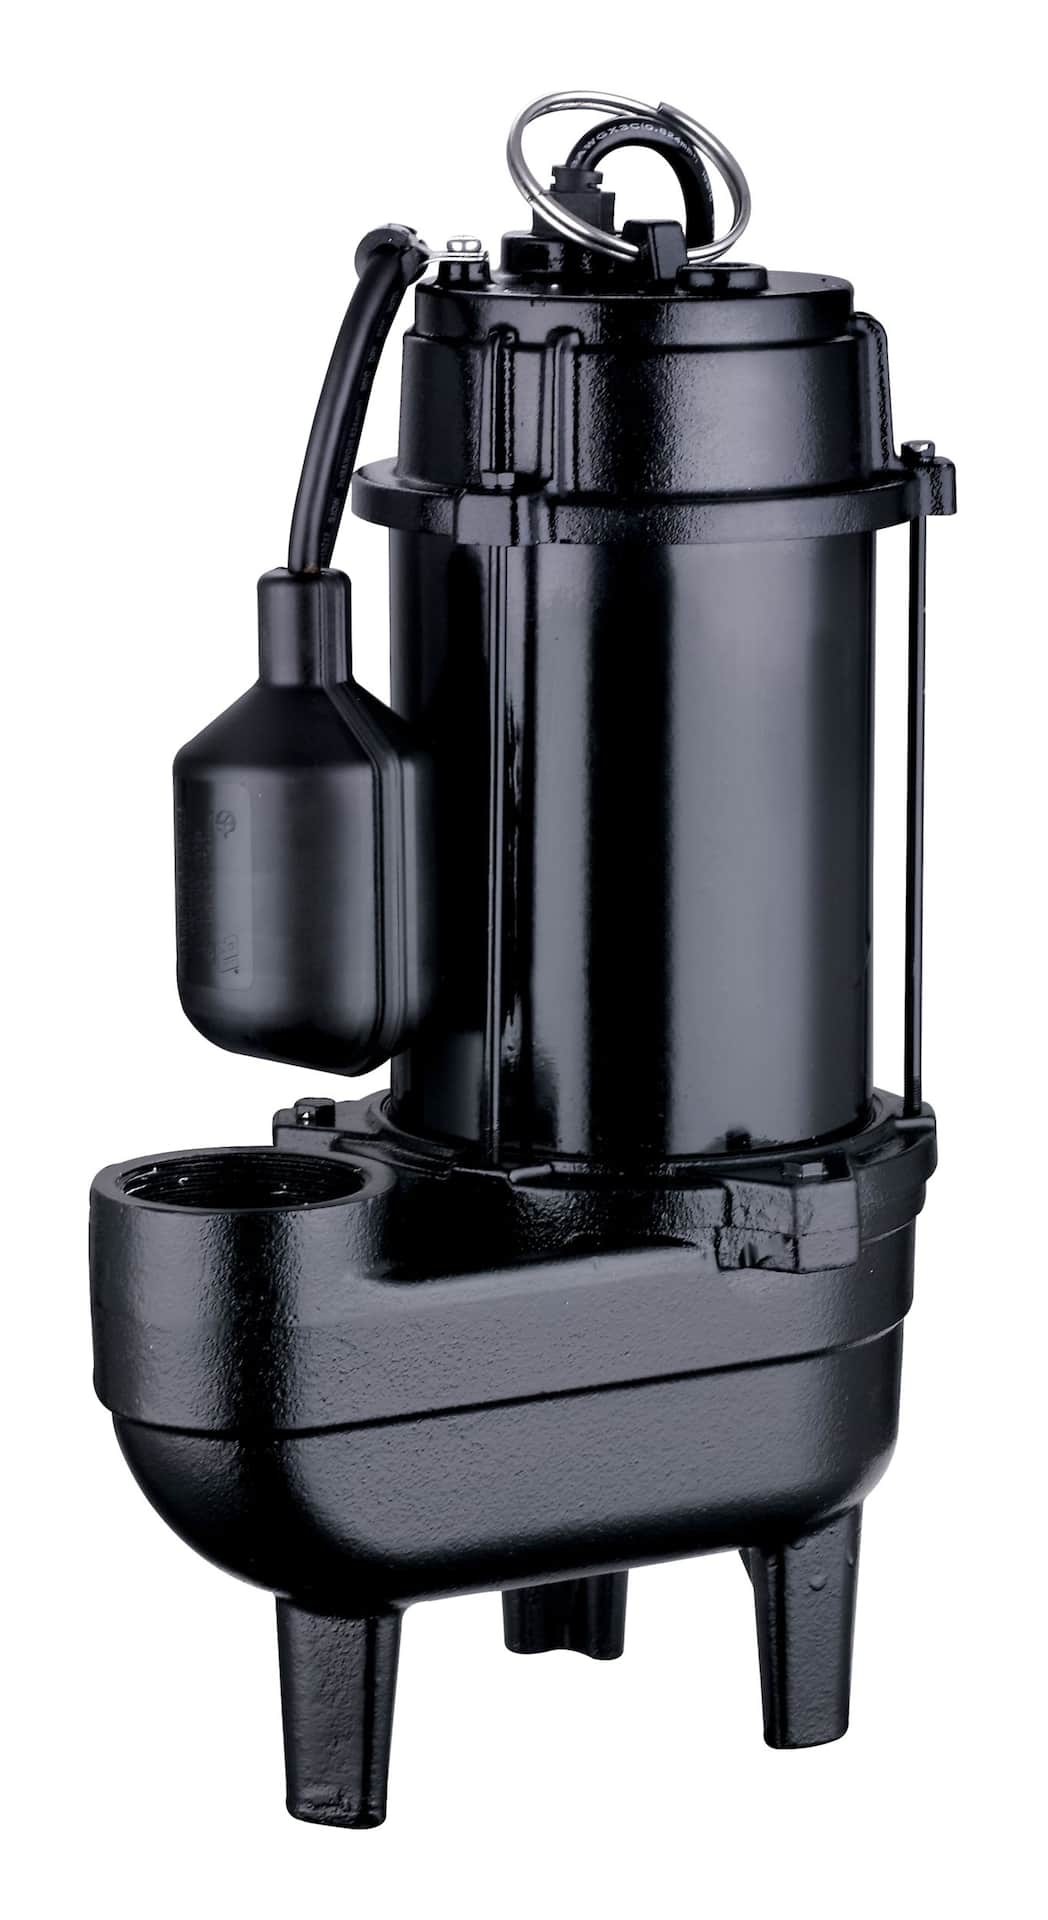 Mastercraft 1/2 HP Submersible Sewage Pump